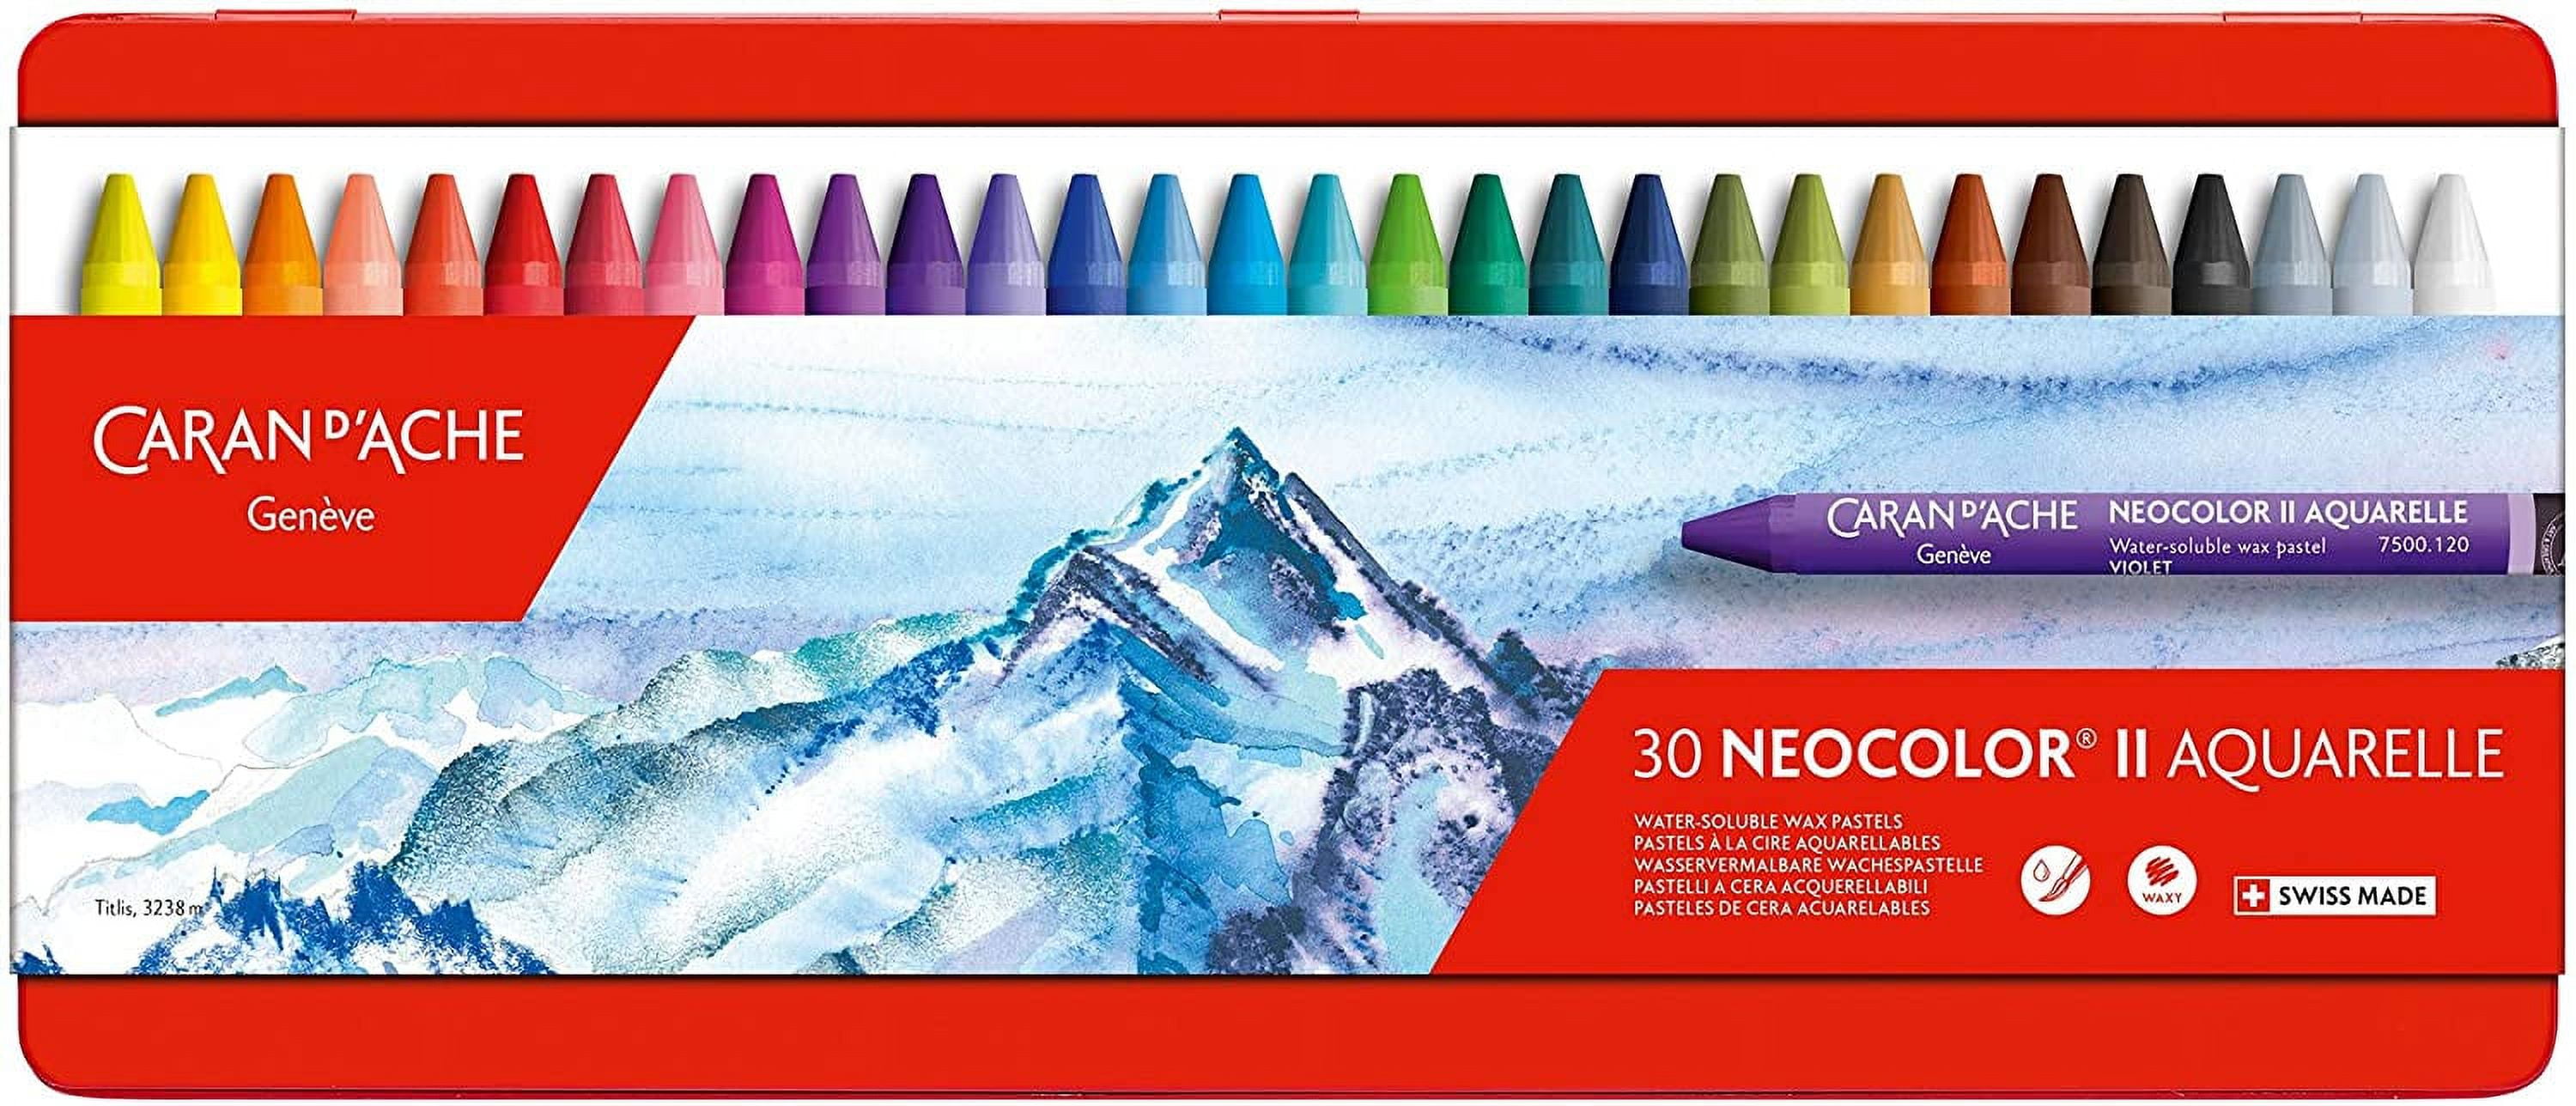 Caran d'Ache Neocolor I Wax Pastels and Sets